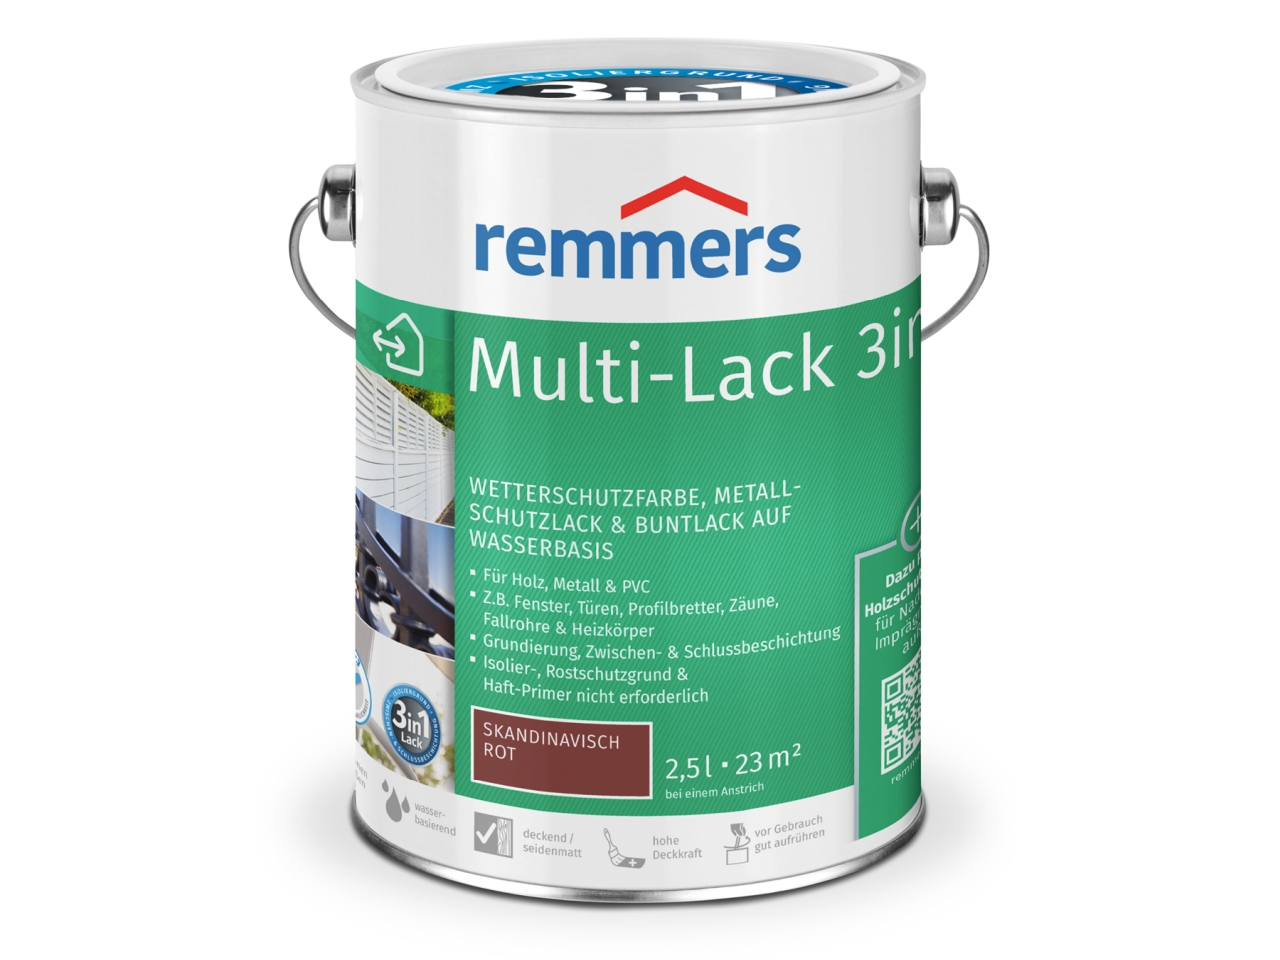 Remmers  Multi-Lack 3in1  lakk 